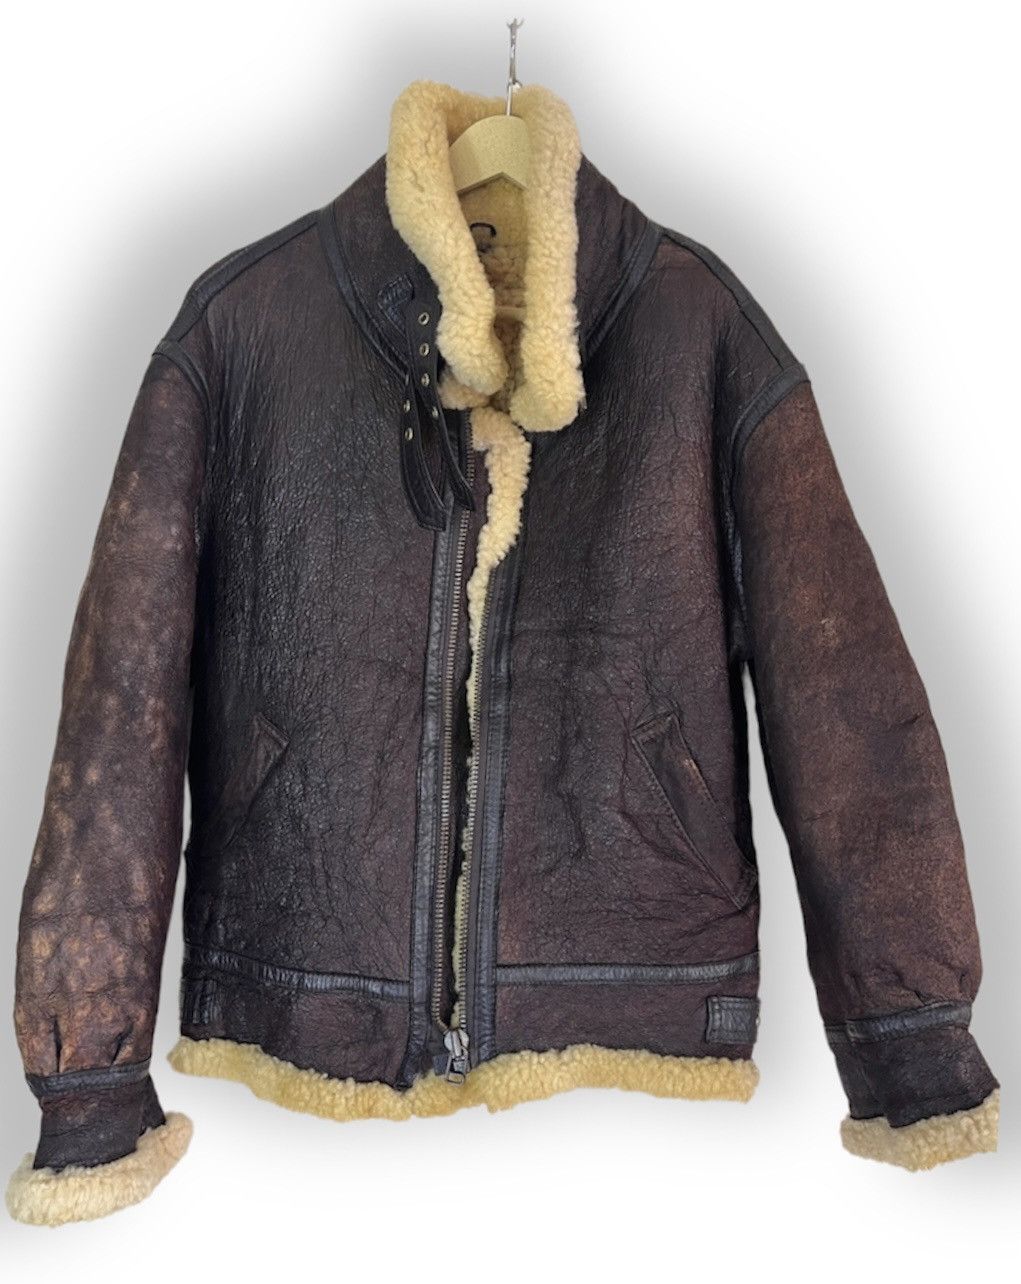 Vintage - Resident Evil B3 SheepSkin Leather Coat Jacket Japan - 2